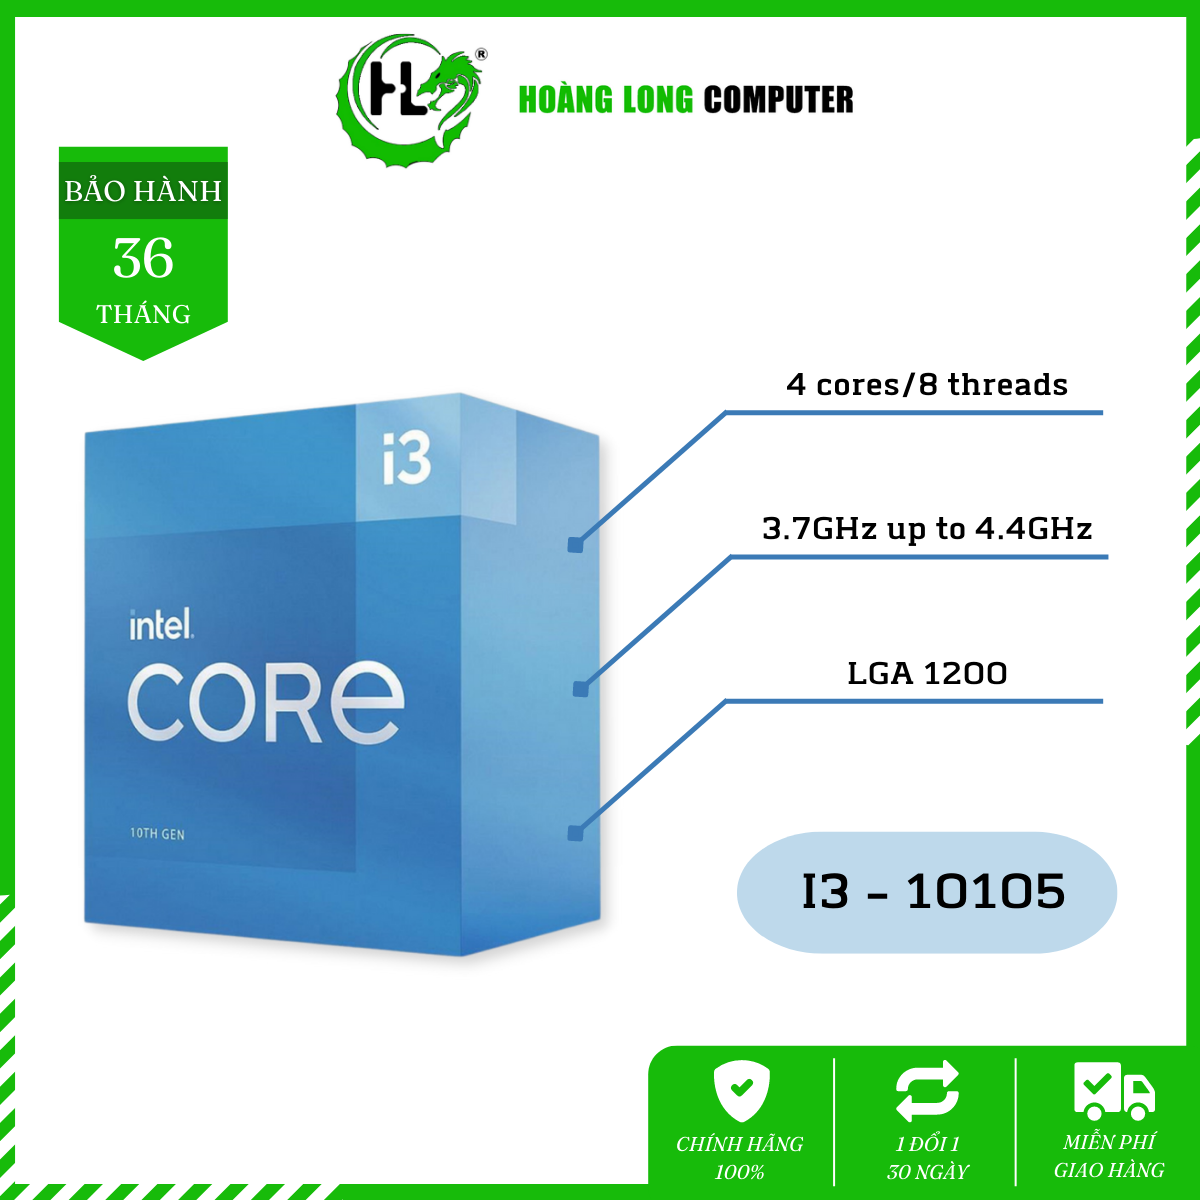 CPU Intel Core i3 - 10105 - 3.7GHz up to 4.4GHz, 4 nhân 8 luồng, 6MB Cache